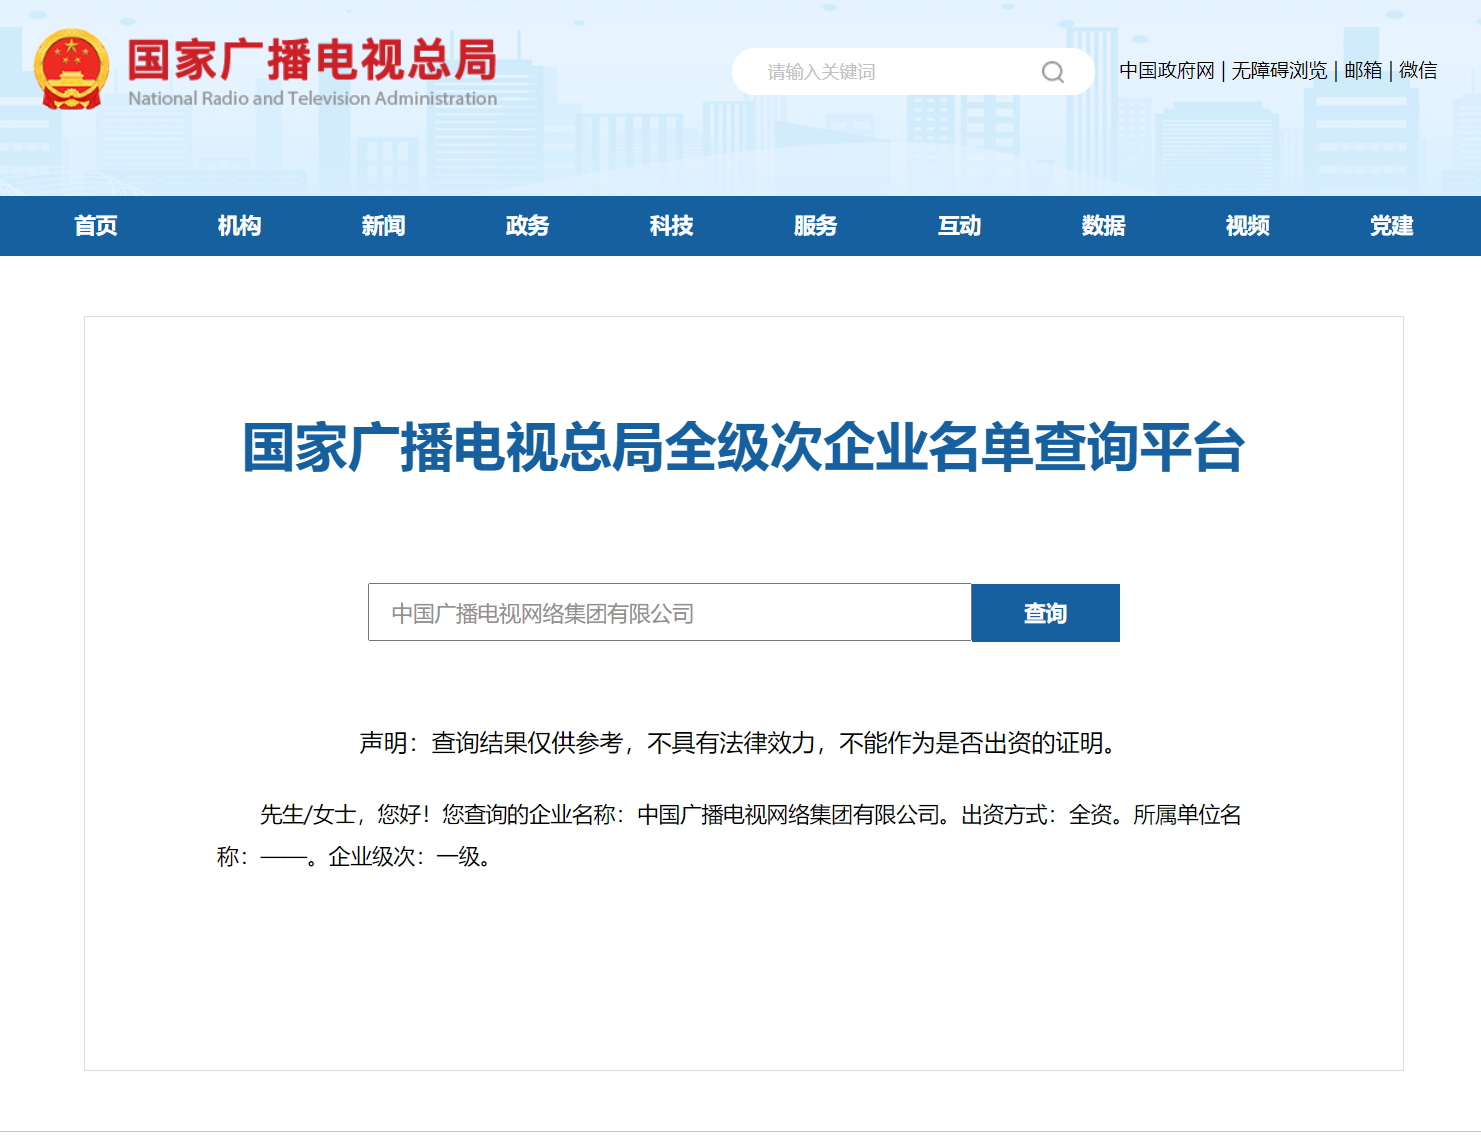 成立十周年！中国广电集团公司全级次企业名单查询平台上线